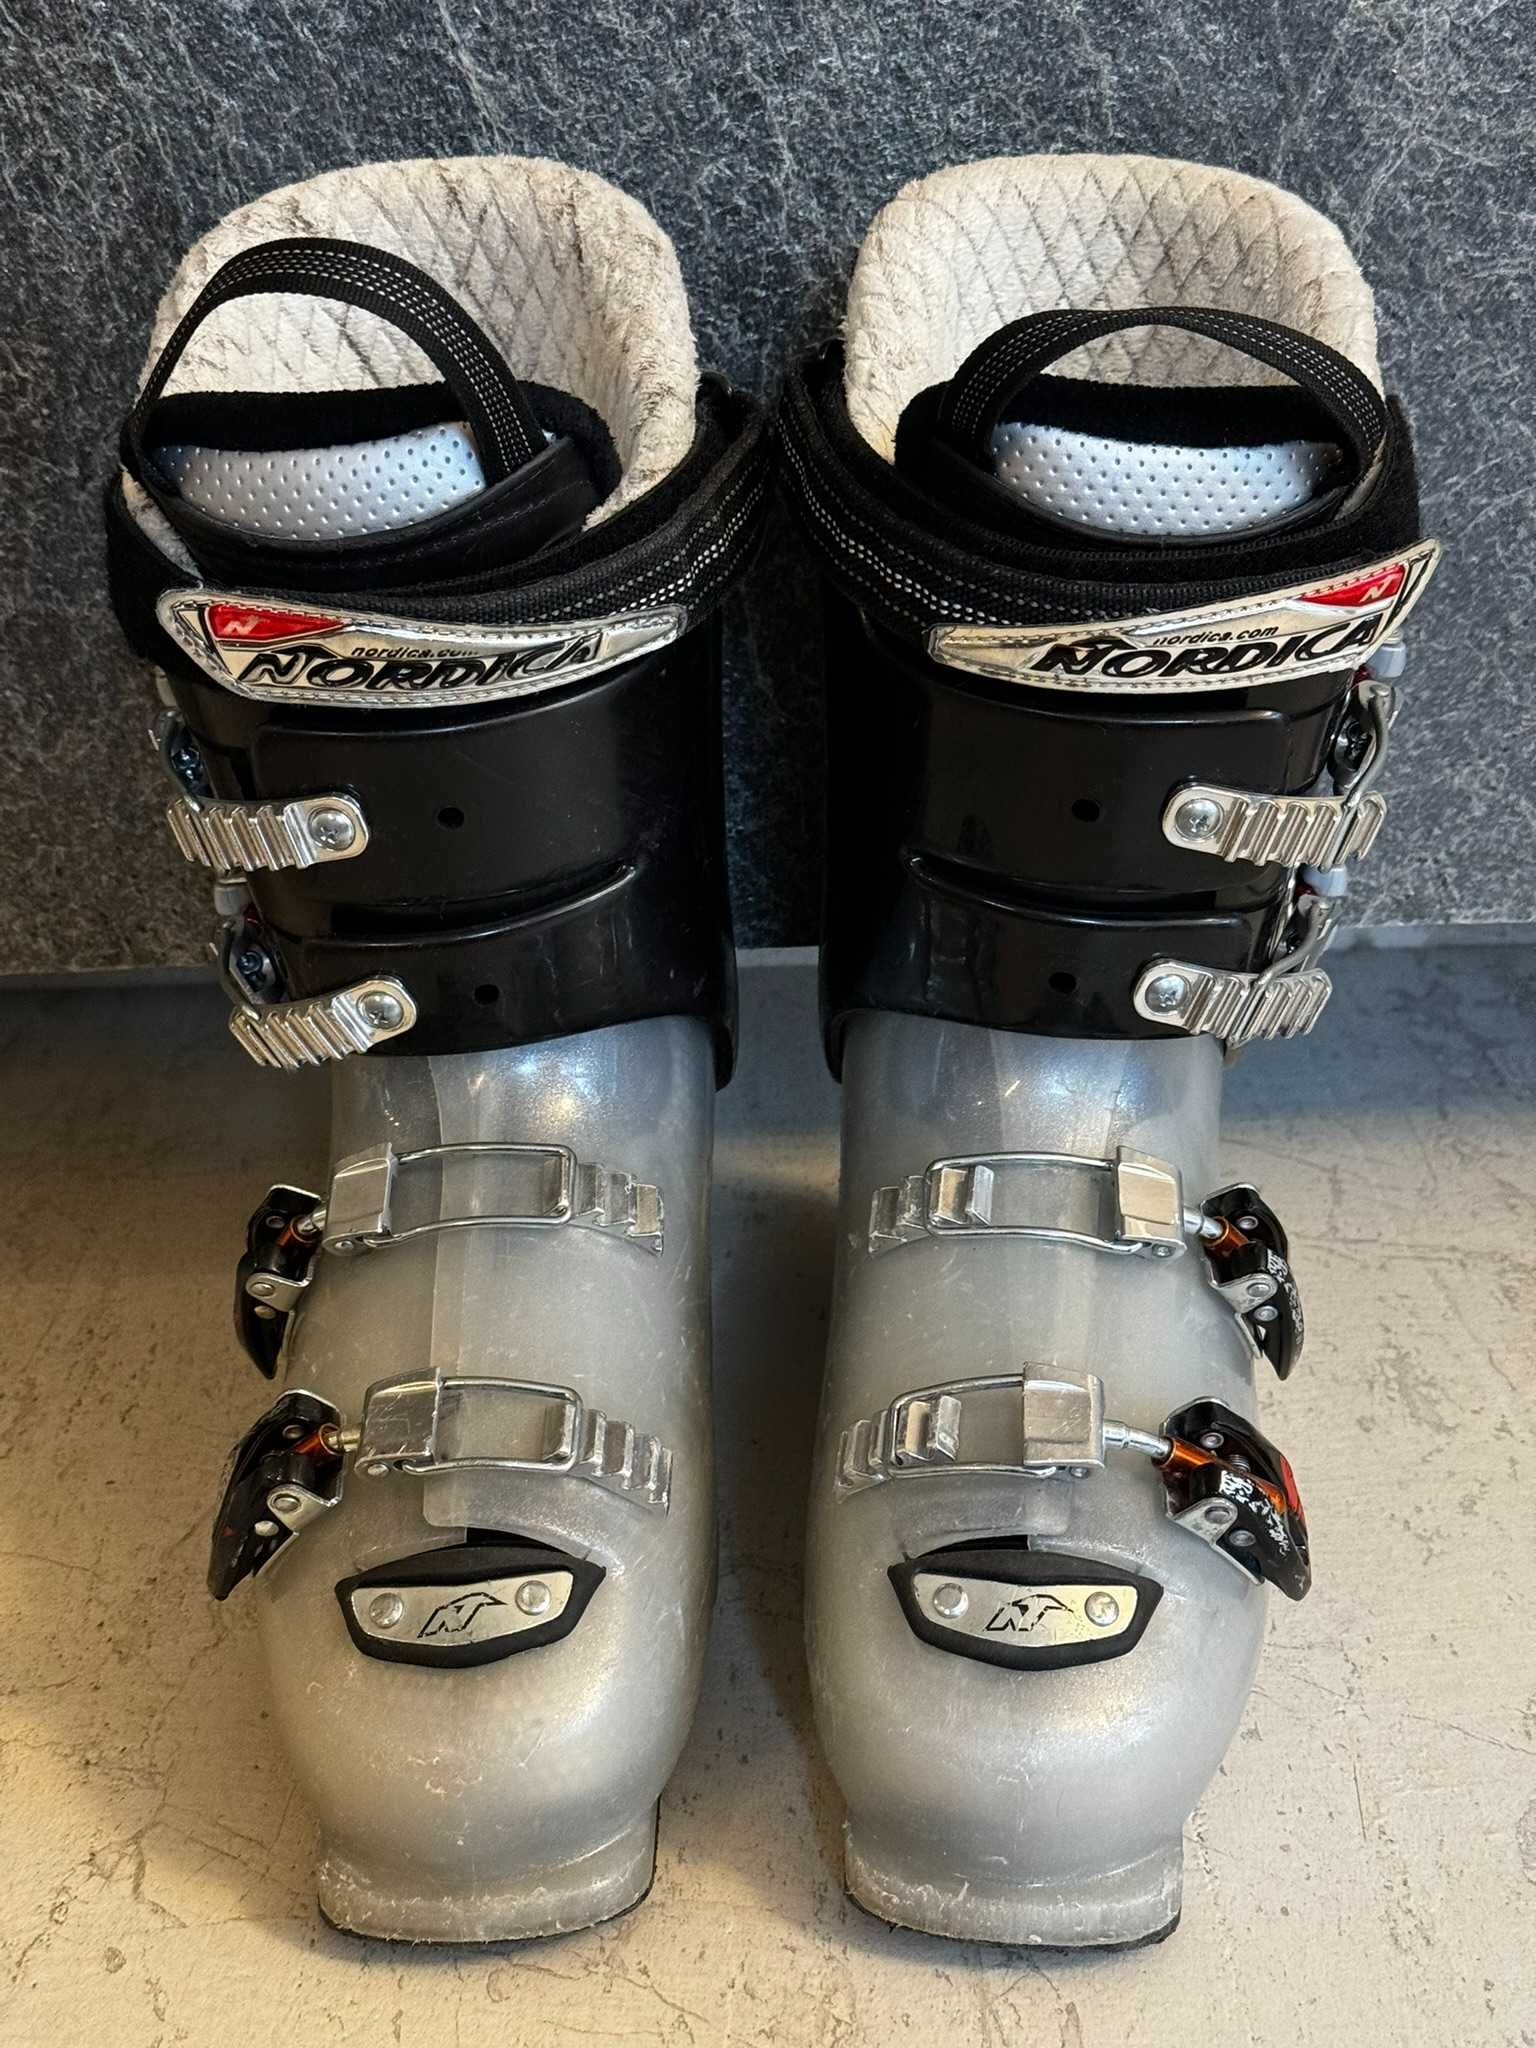 Buty narciarskie NORDICA, długość wkładki 25-25,5 cm - super stan